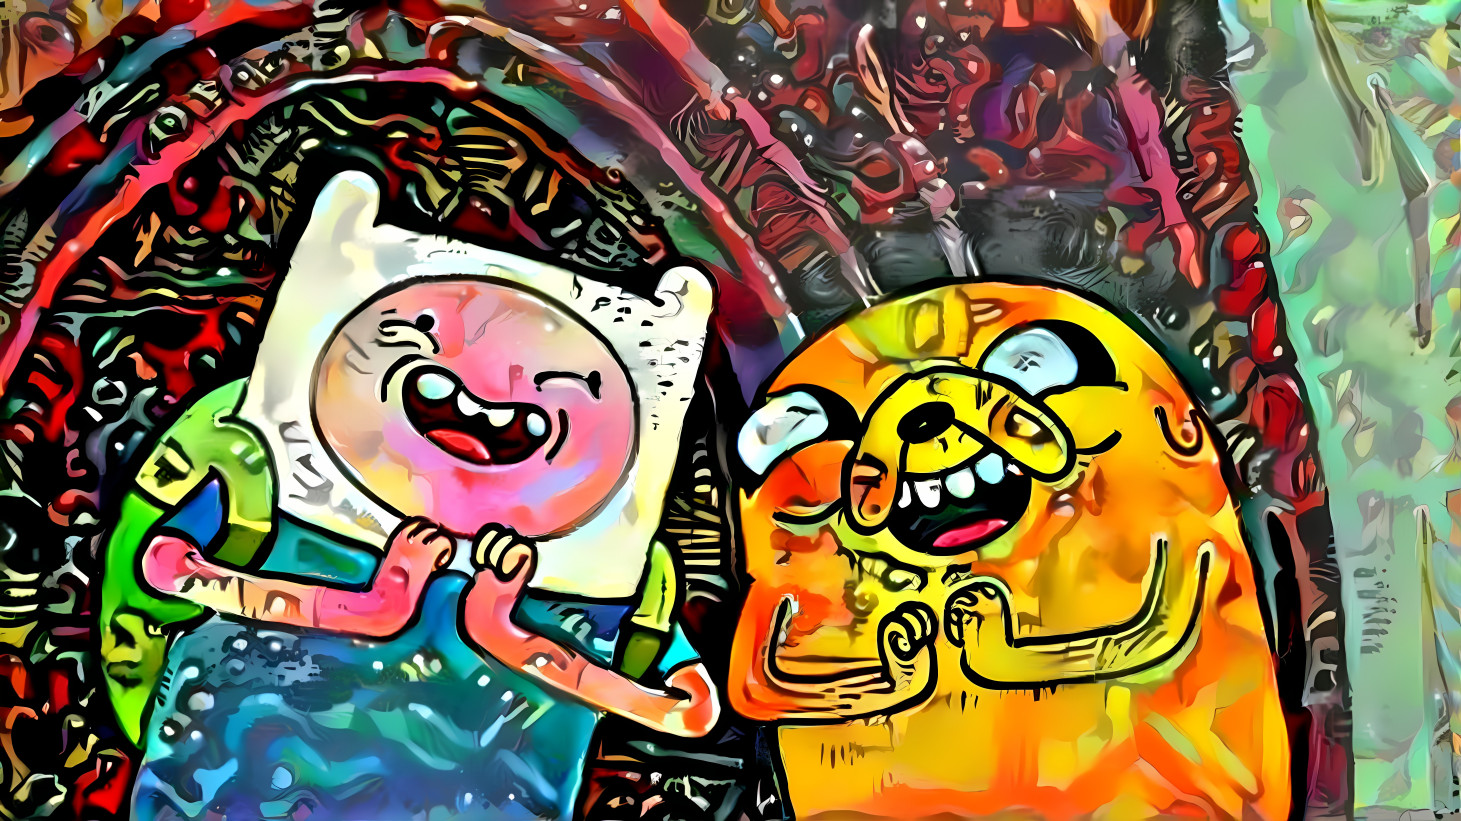 Finn and Jake on acid....